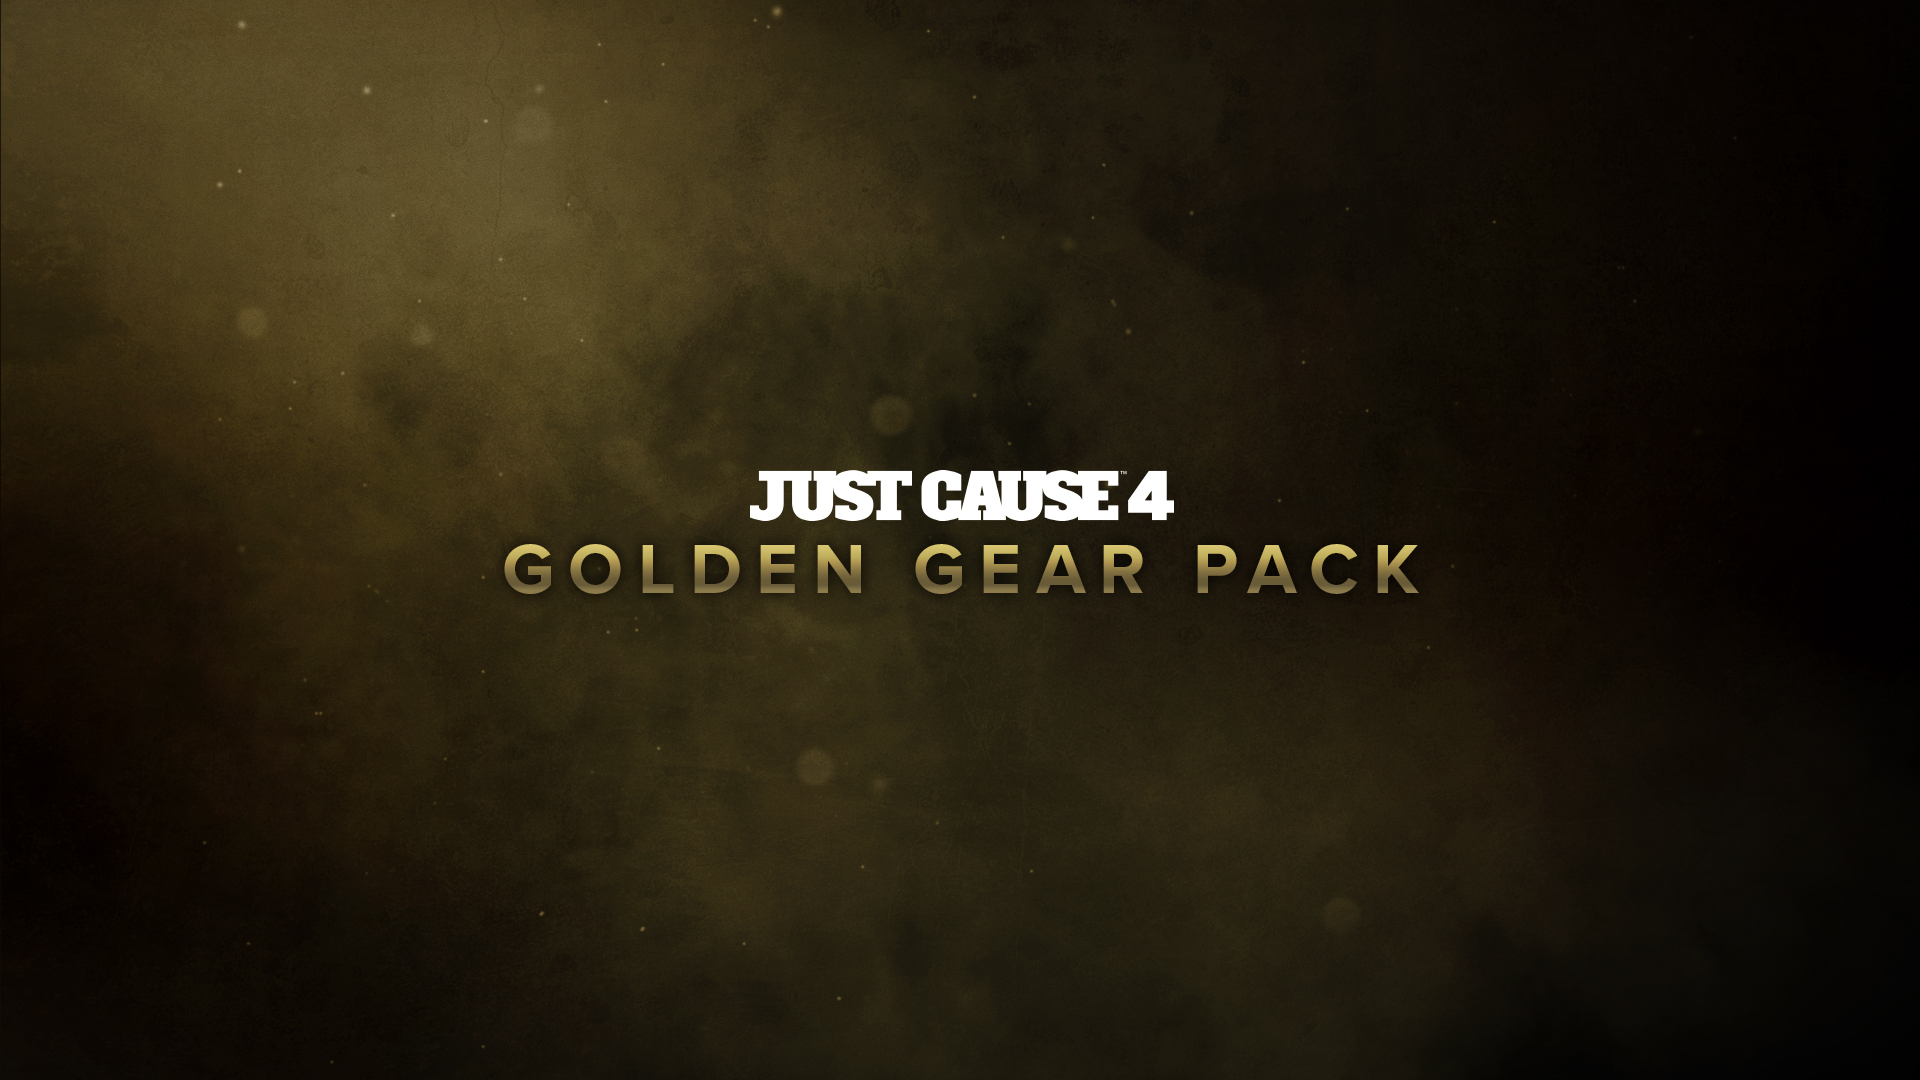 Just Cause™ 4: Golden Gear Pack Featured Screenshot #1